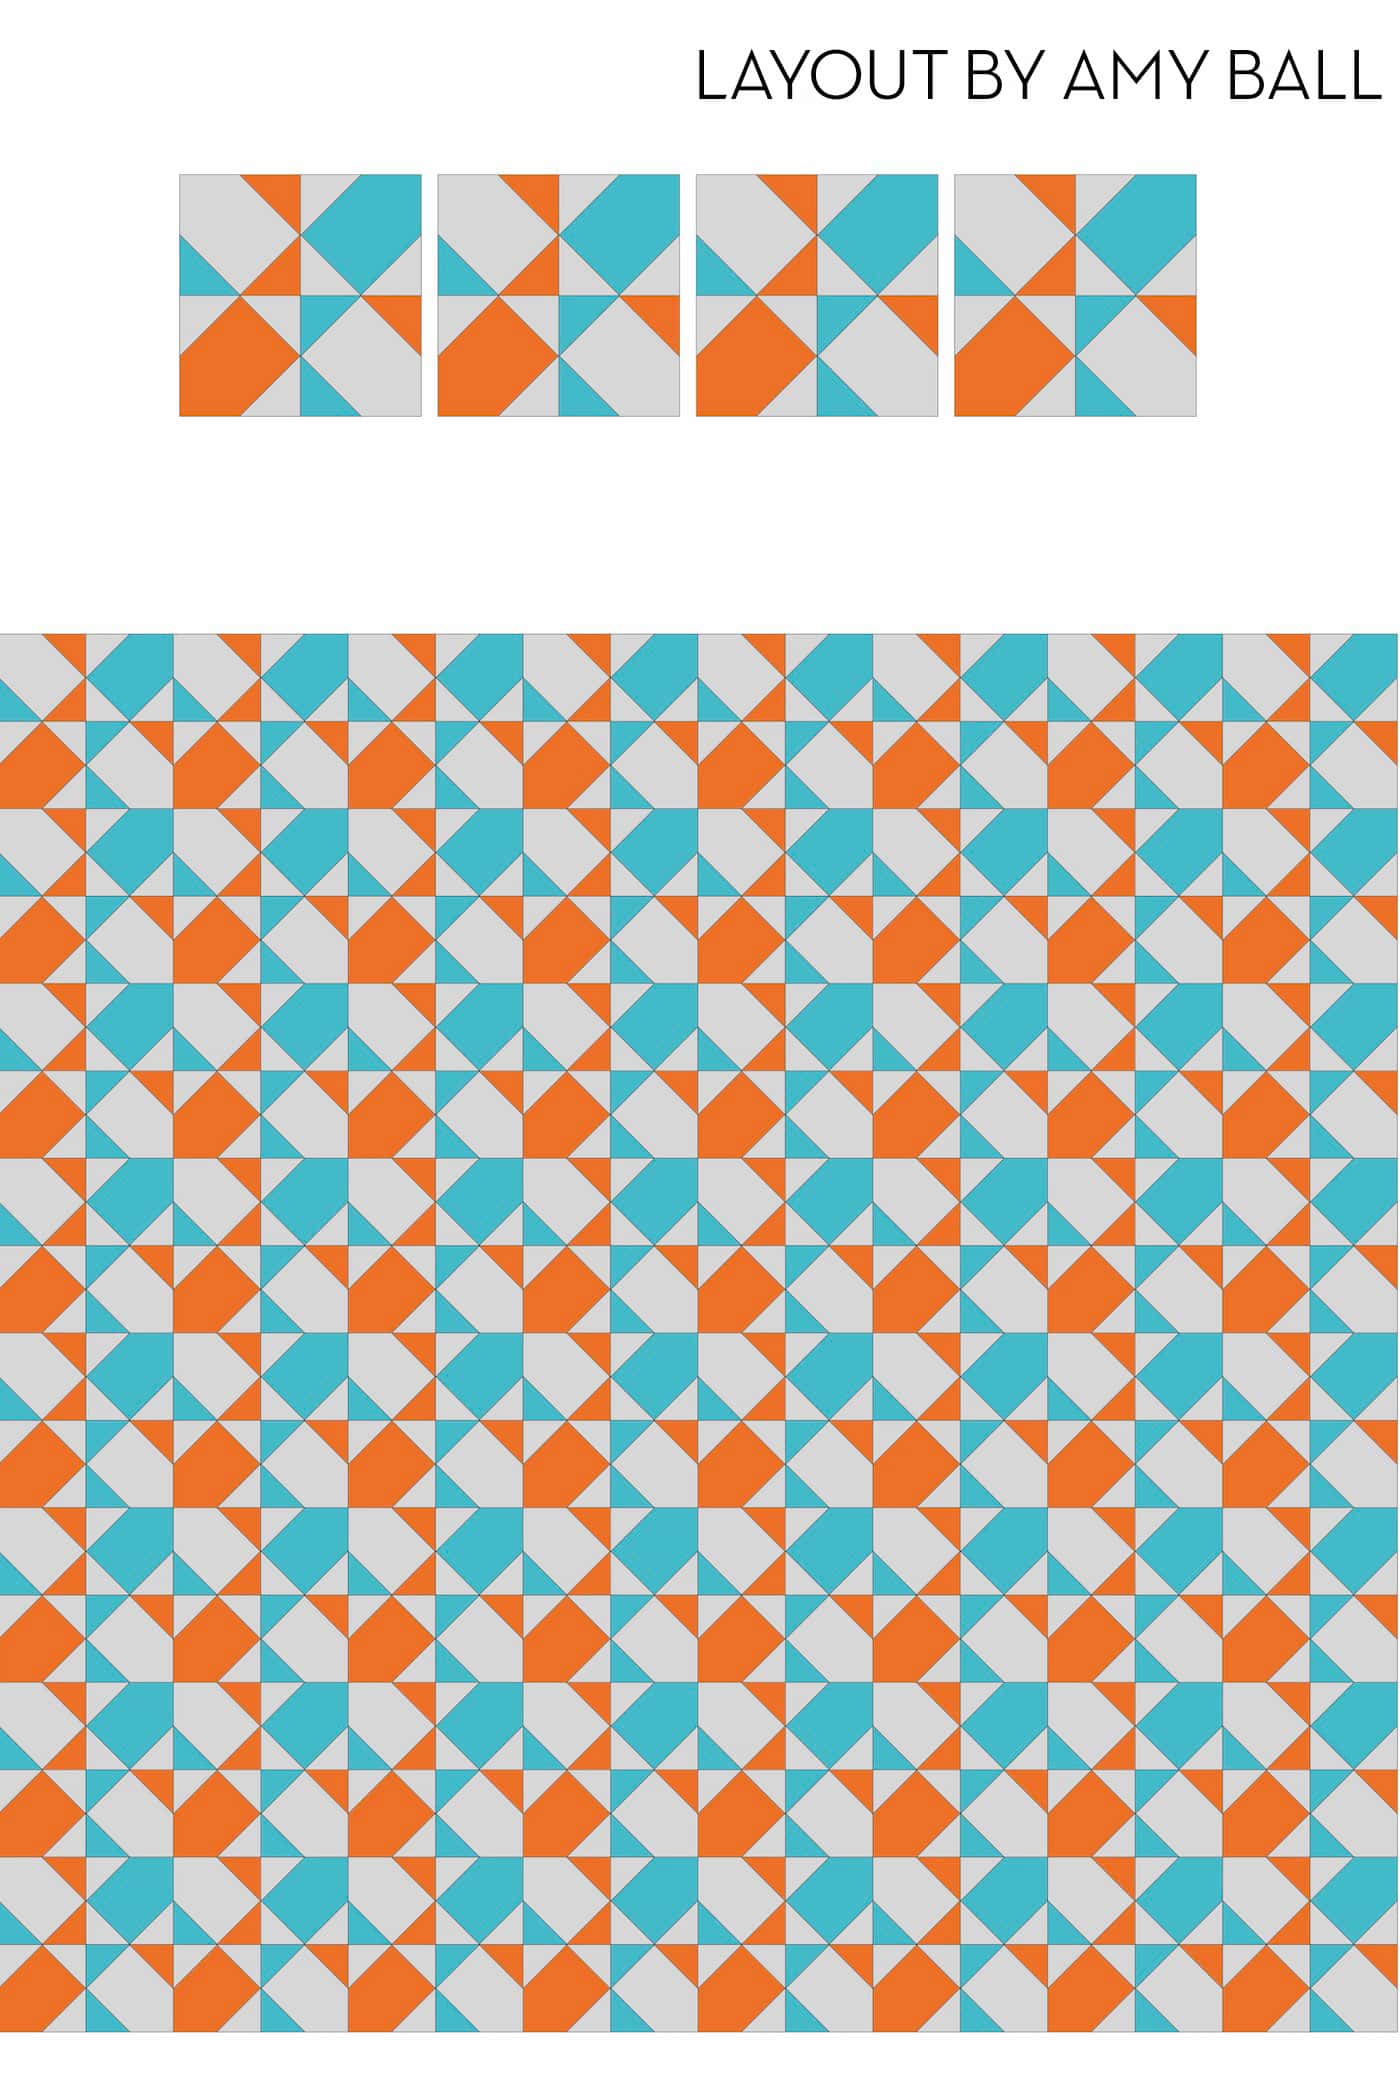 diagramme de blocs de courtepointe orange et bleu dans la disposition du dessus de courtepointe